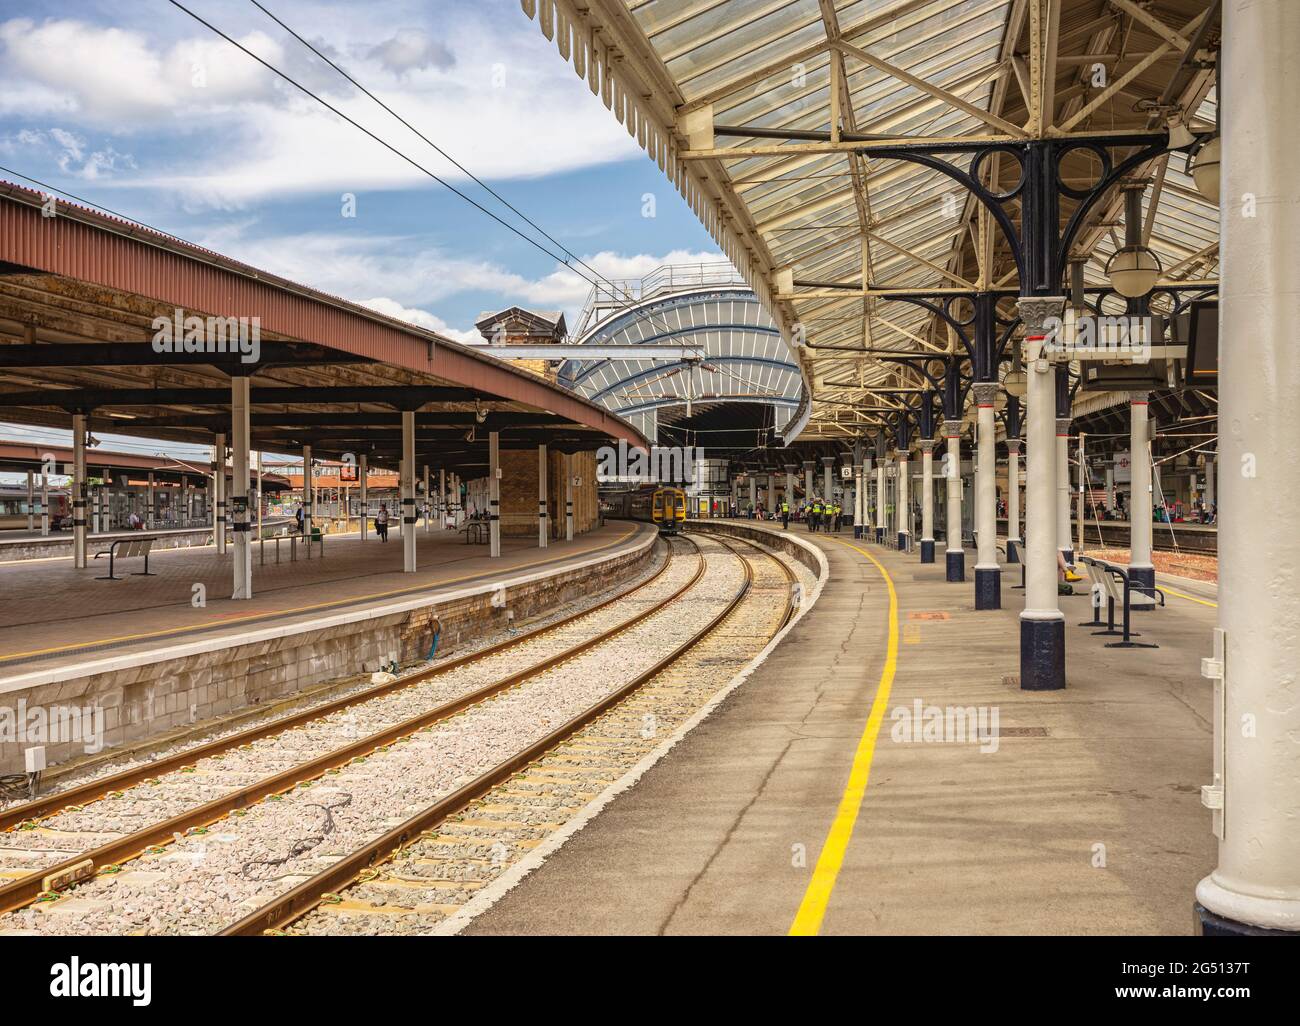 Vue typique d'une gare ferroviaire de la plate-forme avec un train en attente de départ. Une courbe très orné, métal et verre 19e siècle est couvert ci-dessus. Banque D'Images